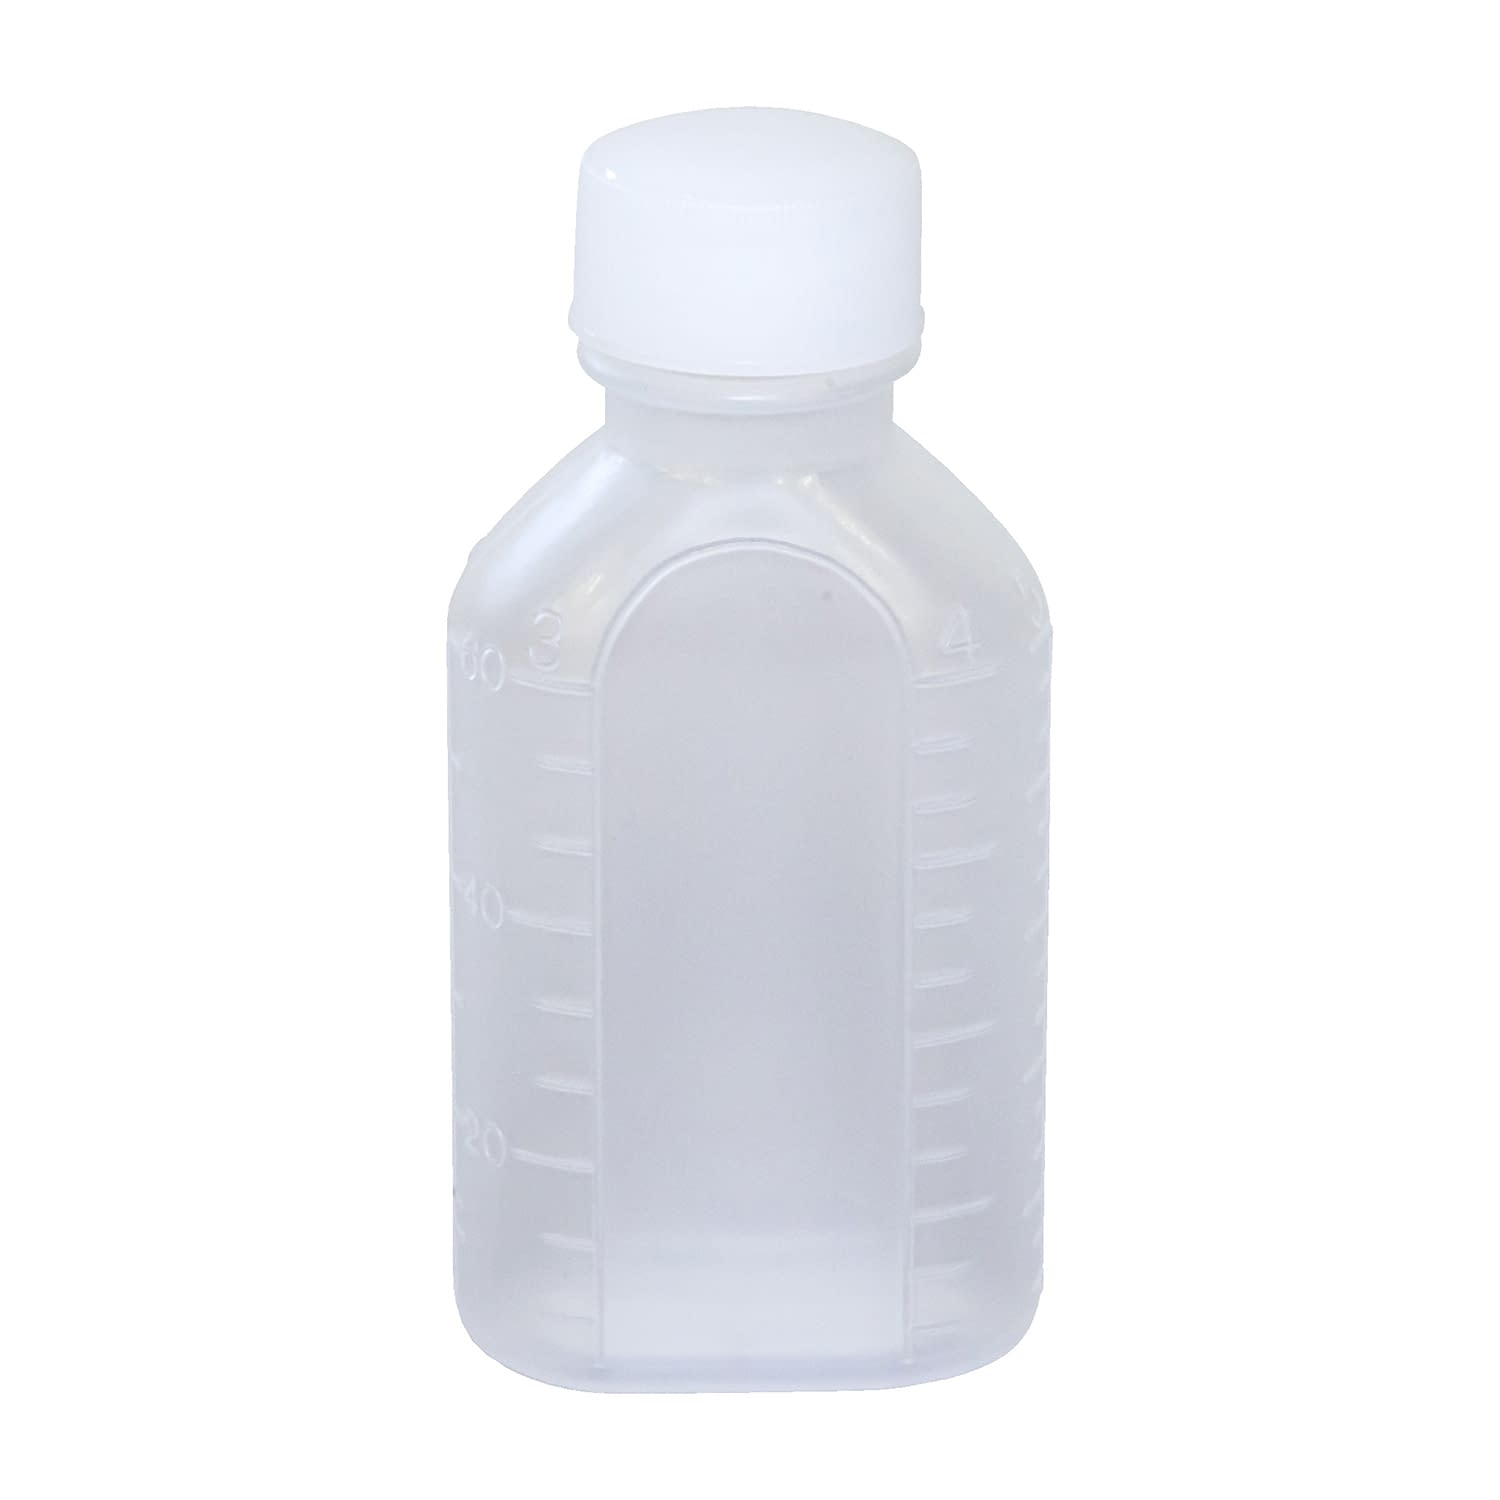 投薬瓶ＰＰＢ（滅菌済） 60CC(15ﾎﾝX20ﾌｸﾛｲﾘ) キャップ：白ＰＰ60cc白・PP【エムアイケミカル】FALSE(08-2855-02-06)